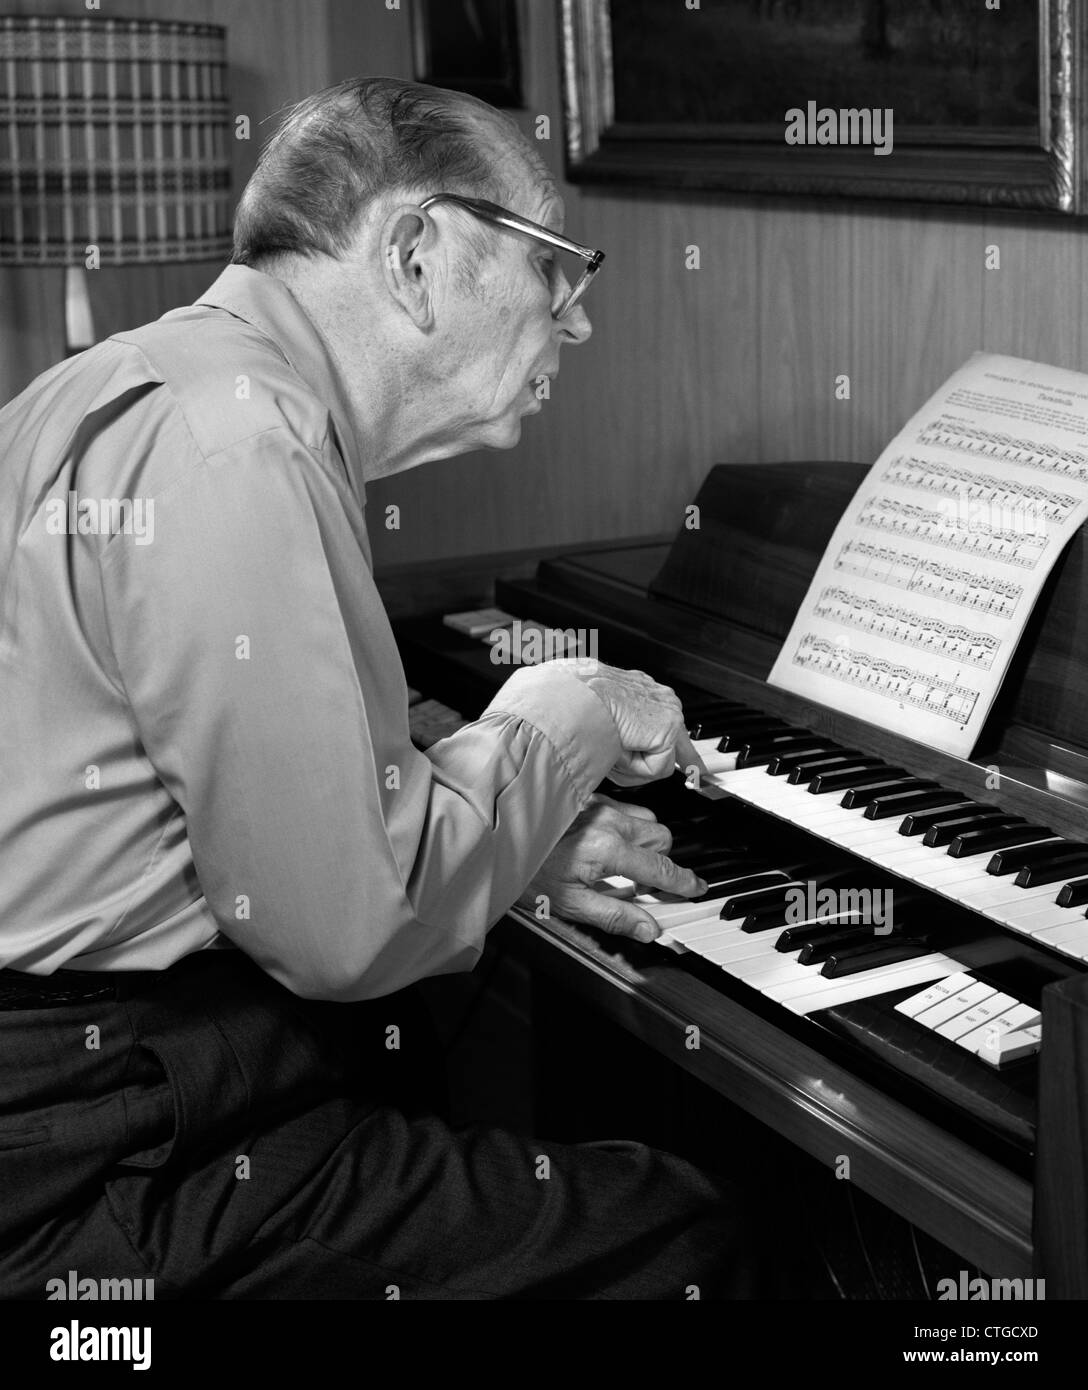 Anni Settanta uomo anziano CON GLI OCCHIALI INCLINATI IN AVANTI per leggere gli spartiti musicali durante la riproduzione di un organo Foto Stock